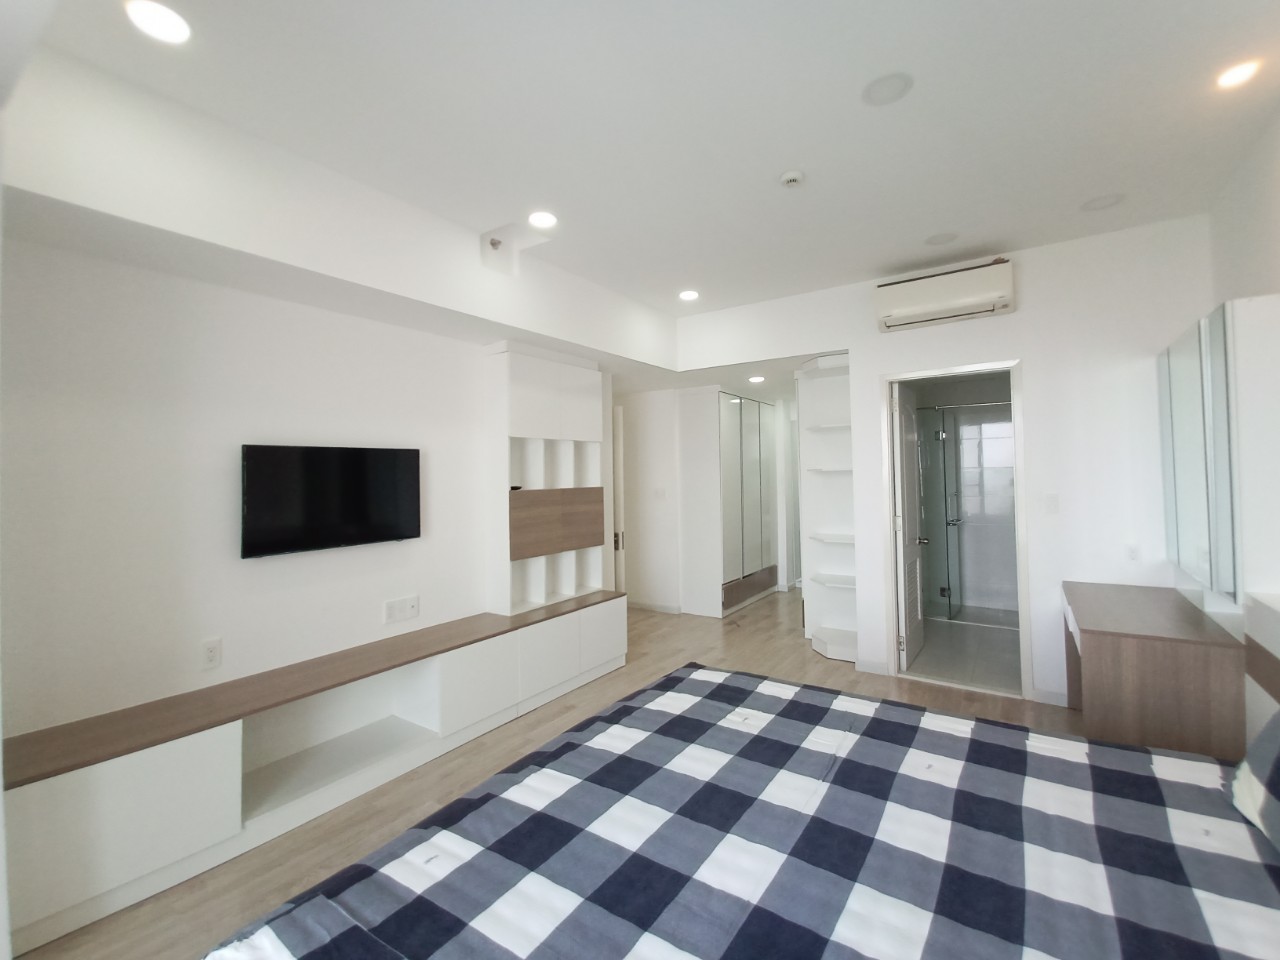 3-bedr3 bedrooms for rent in green valley apartment ooms-for-rent-in-green-valley-apartment (10)